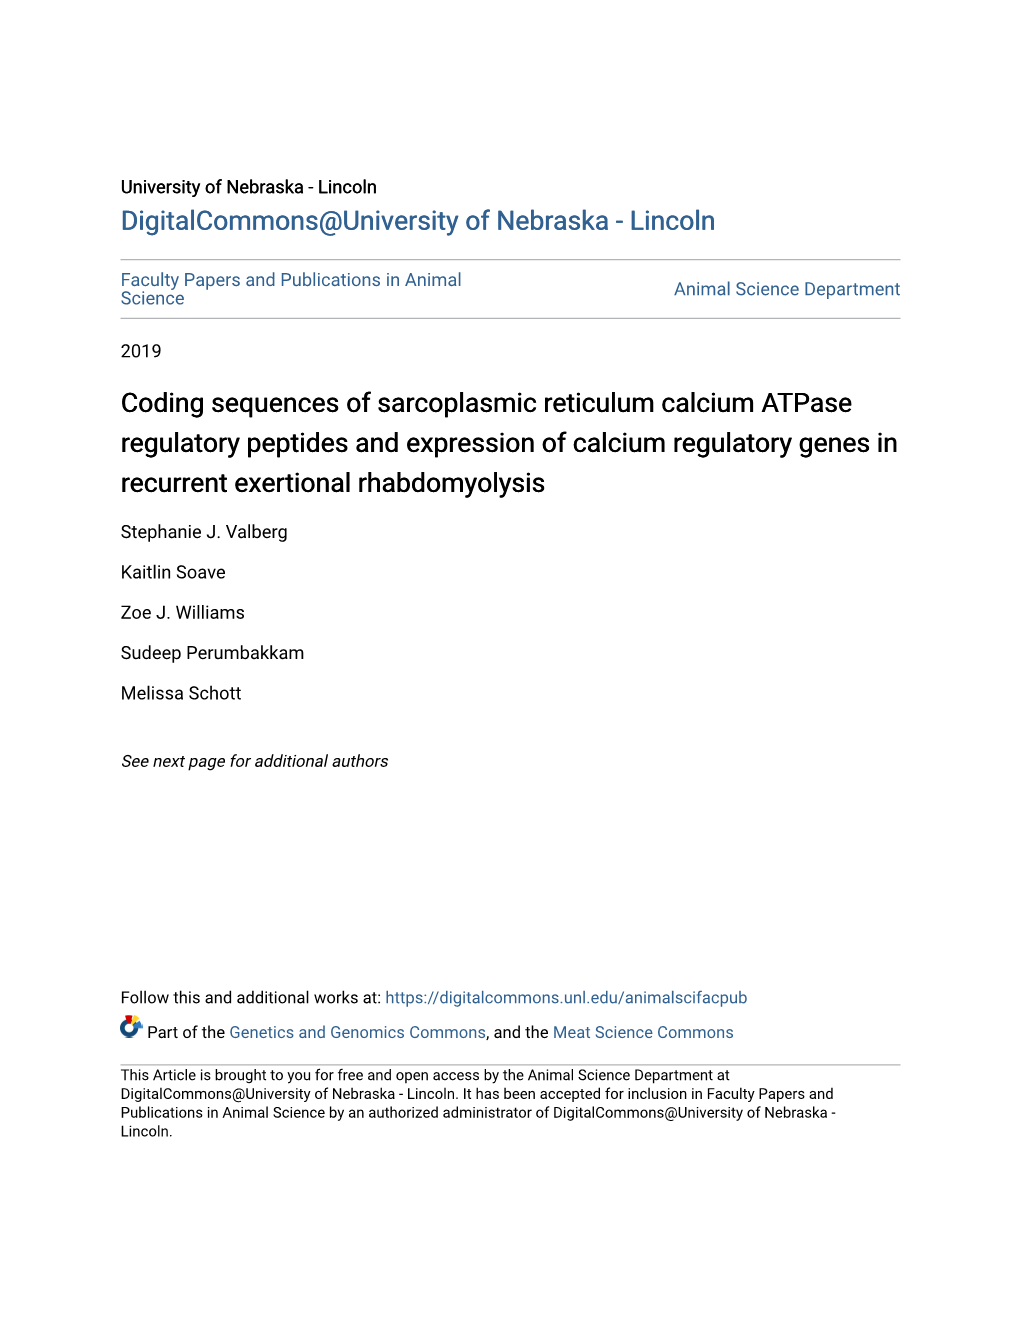 Coding Sequences of Sarcoplasmic Reticulum Calcium Atpase Regulatory Peptides and Expression of Calcium Regulatory Genes in Recurrent Exertional Rhabdomyolysis